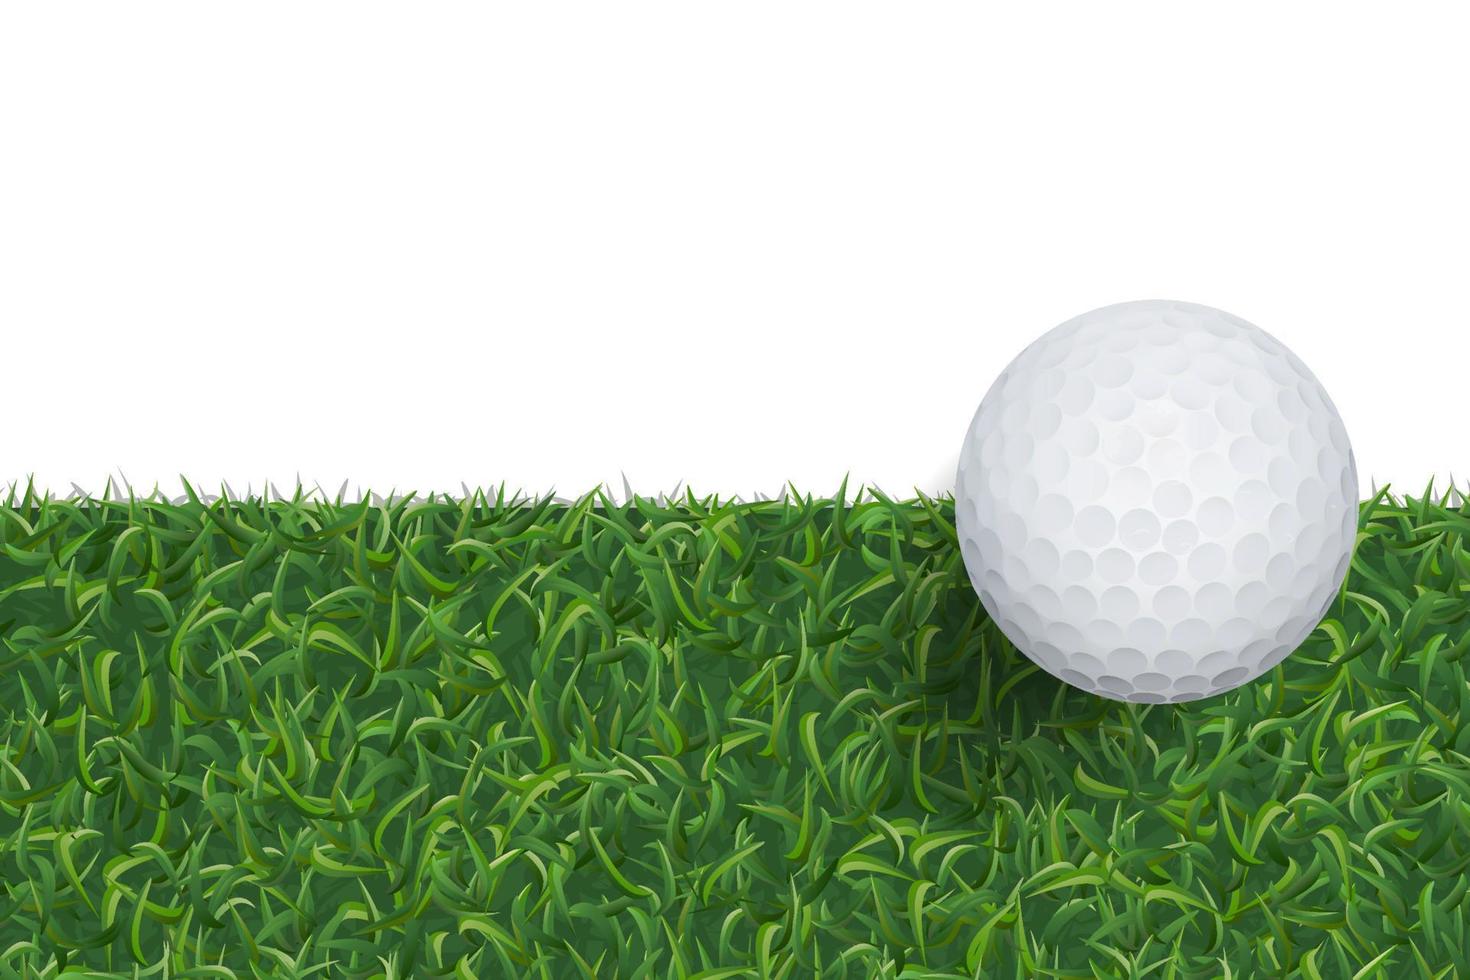 bola de golfe e fundo de grama verde com área para espaço de cópia. vetor. vetor